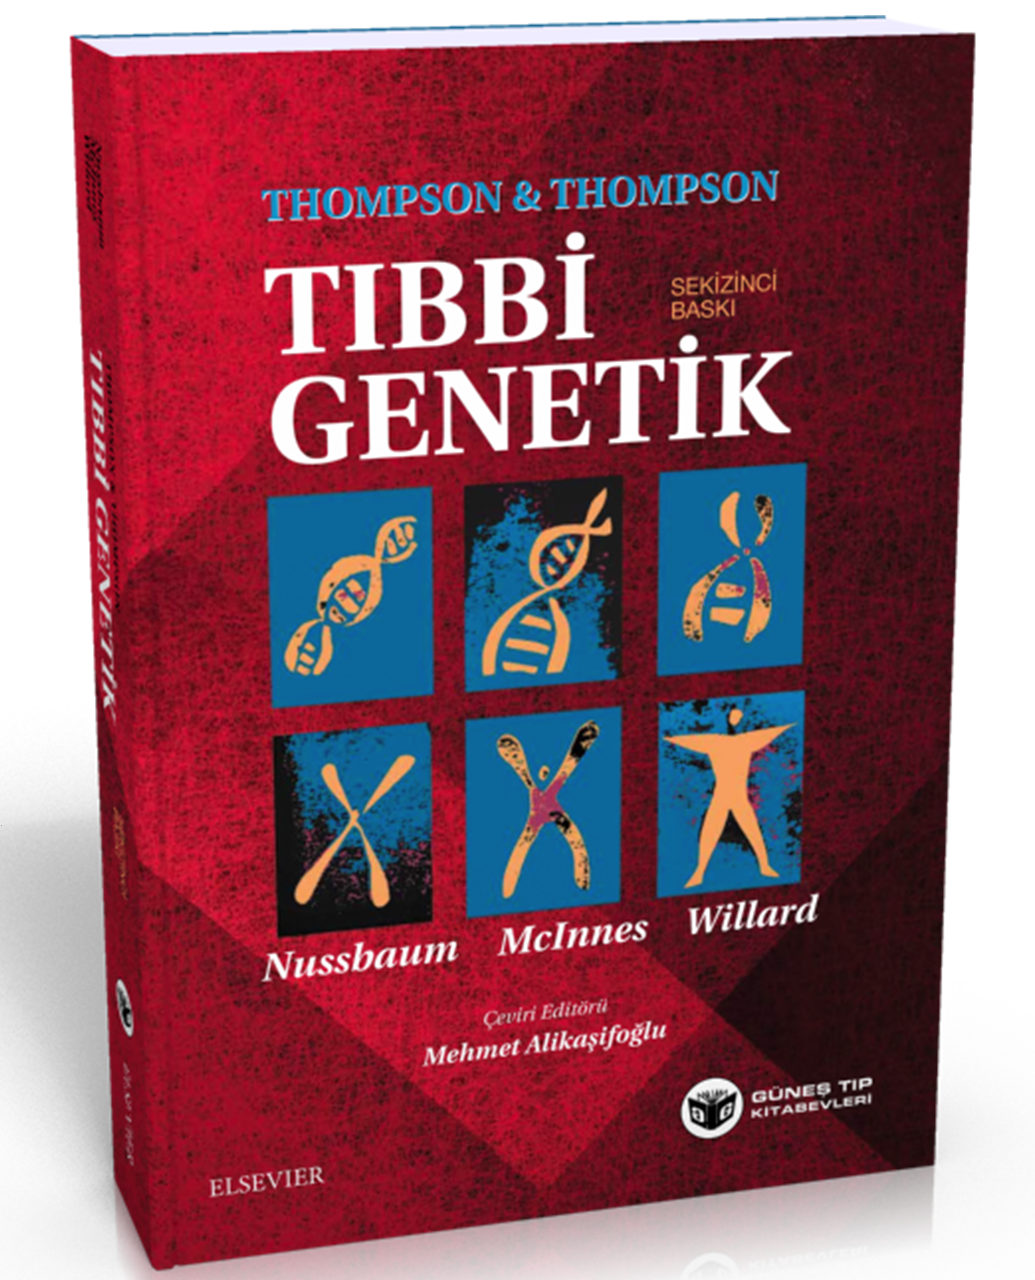 Thompson & Thompson Tıbbi Genetik